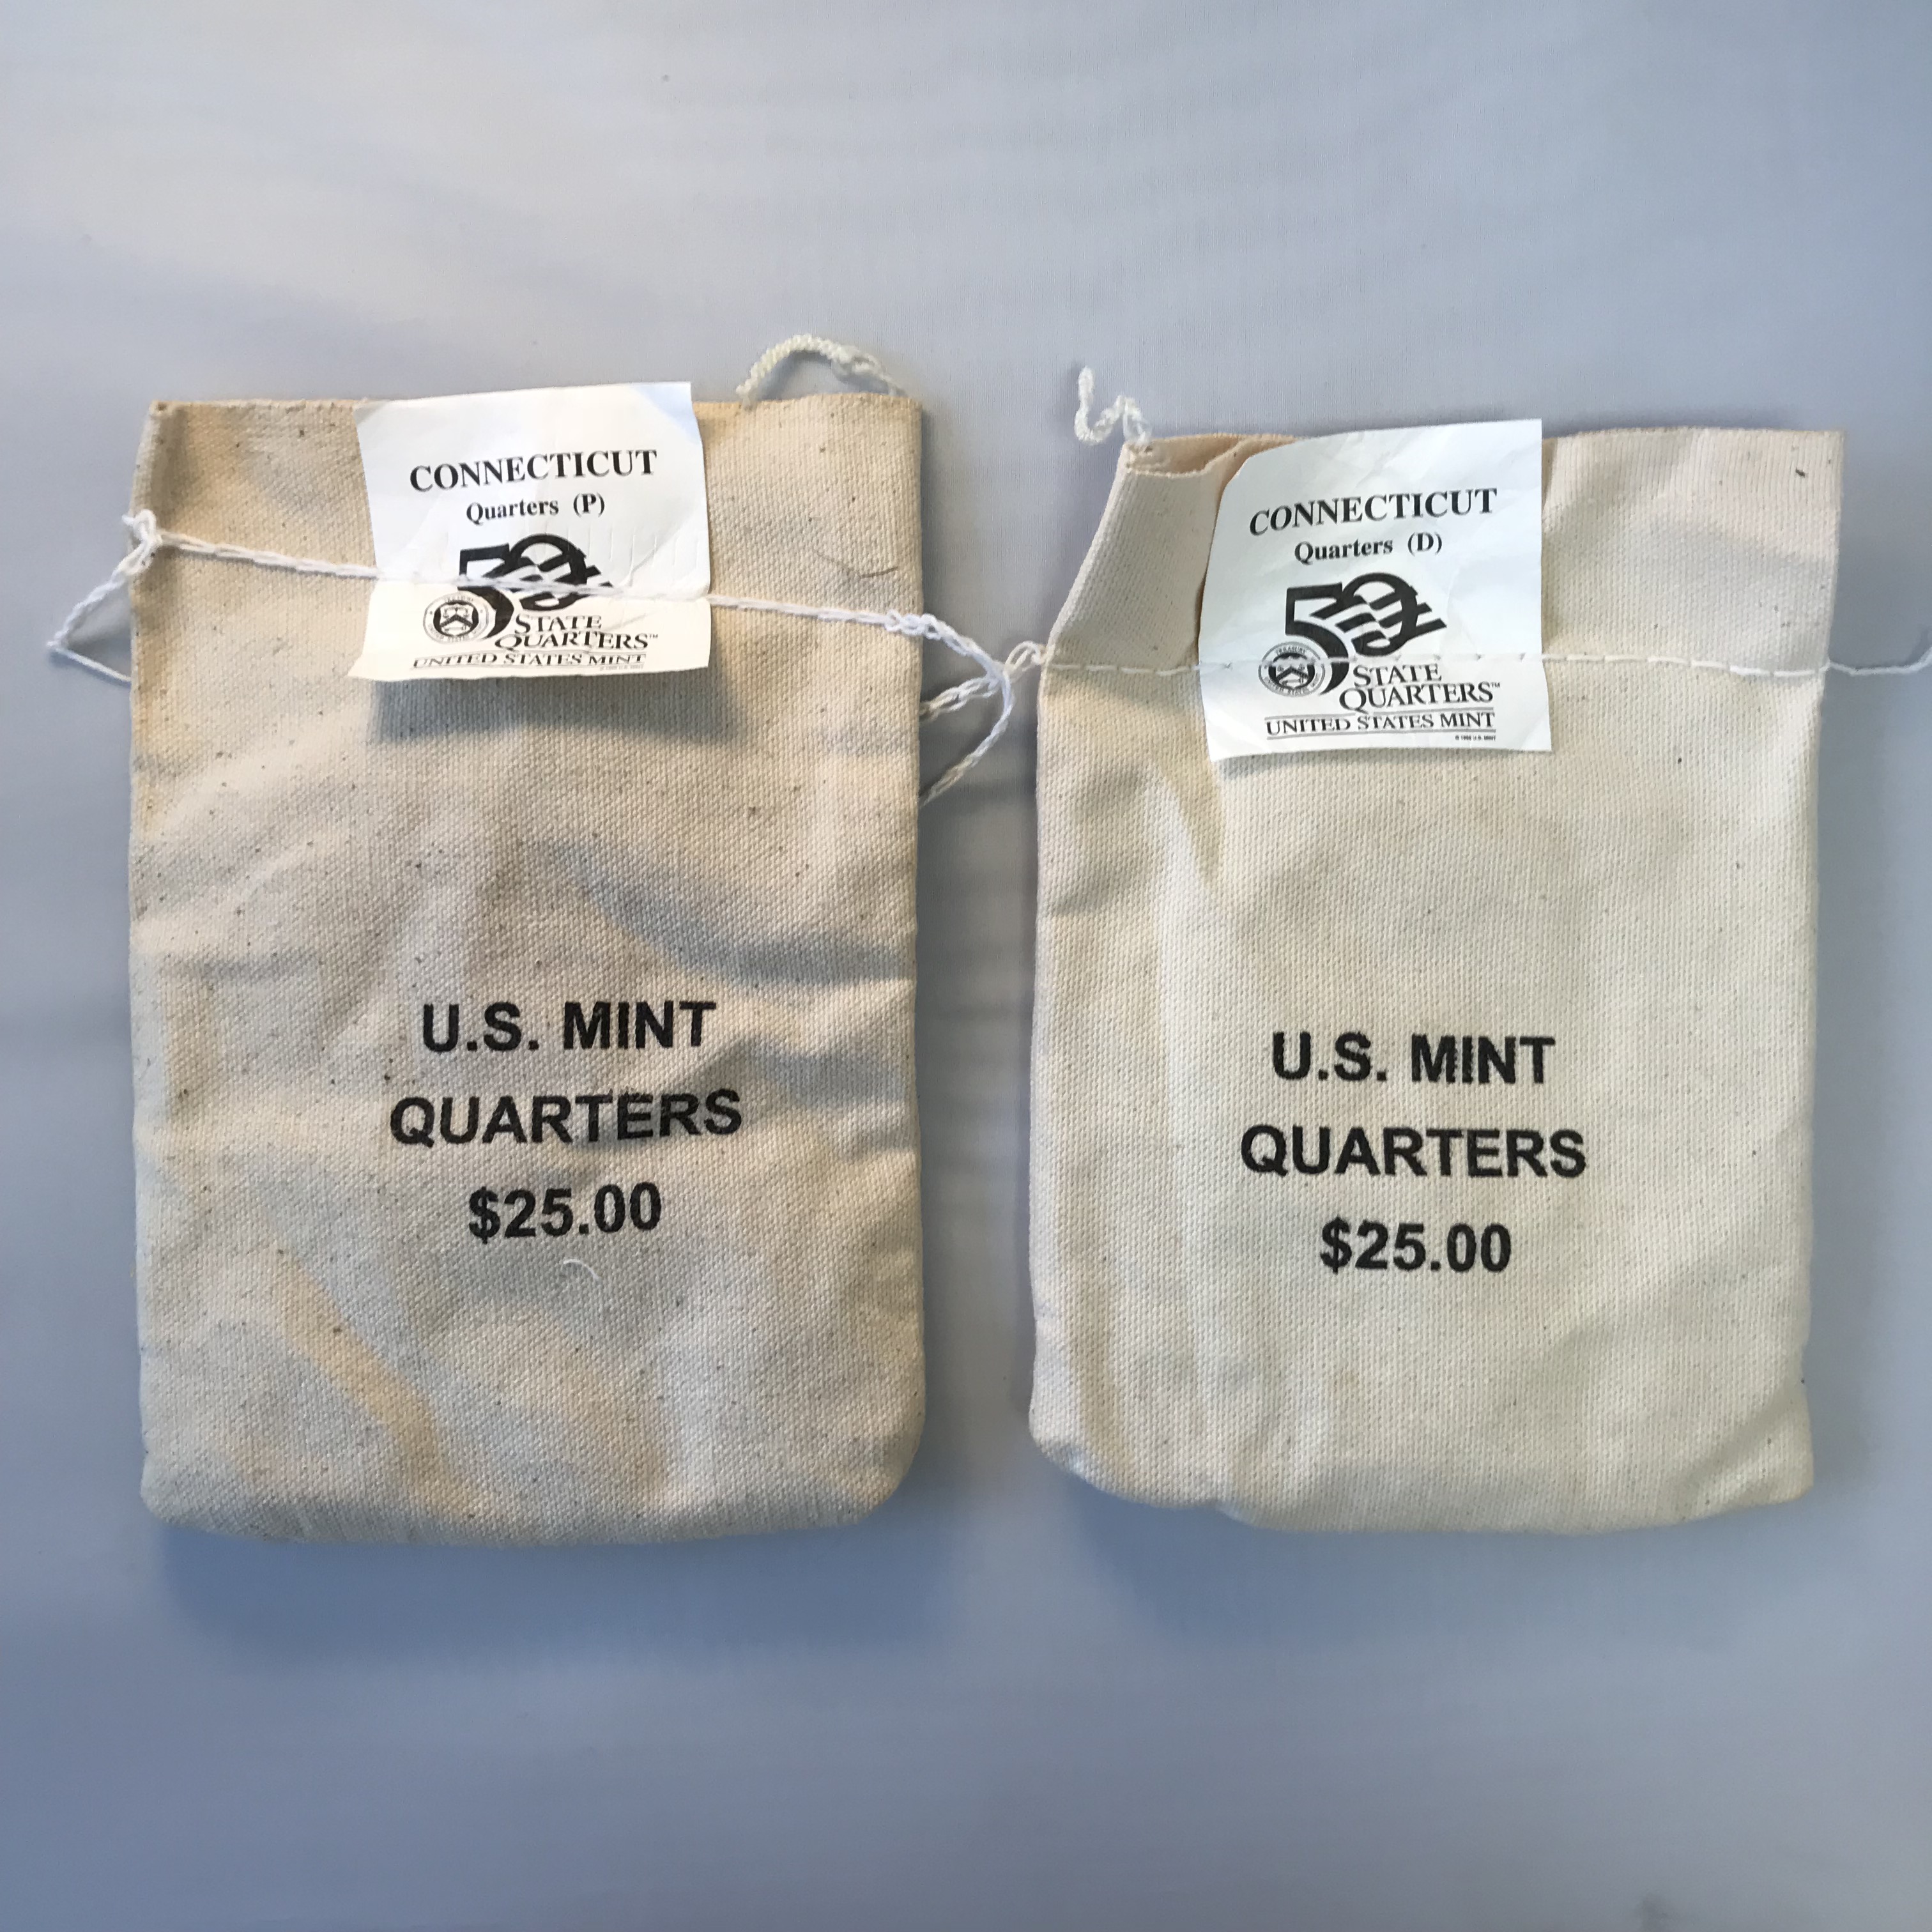 Connecticut $25 Quarter Mint Bags Unopened 1999 P & D